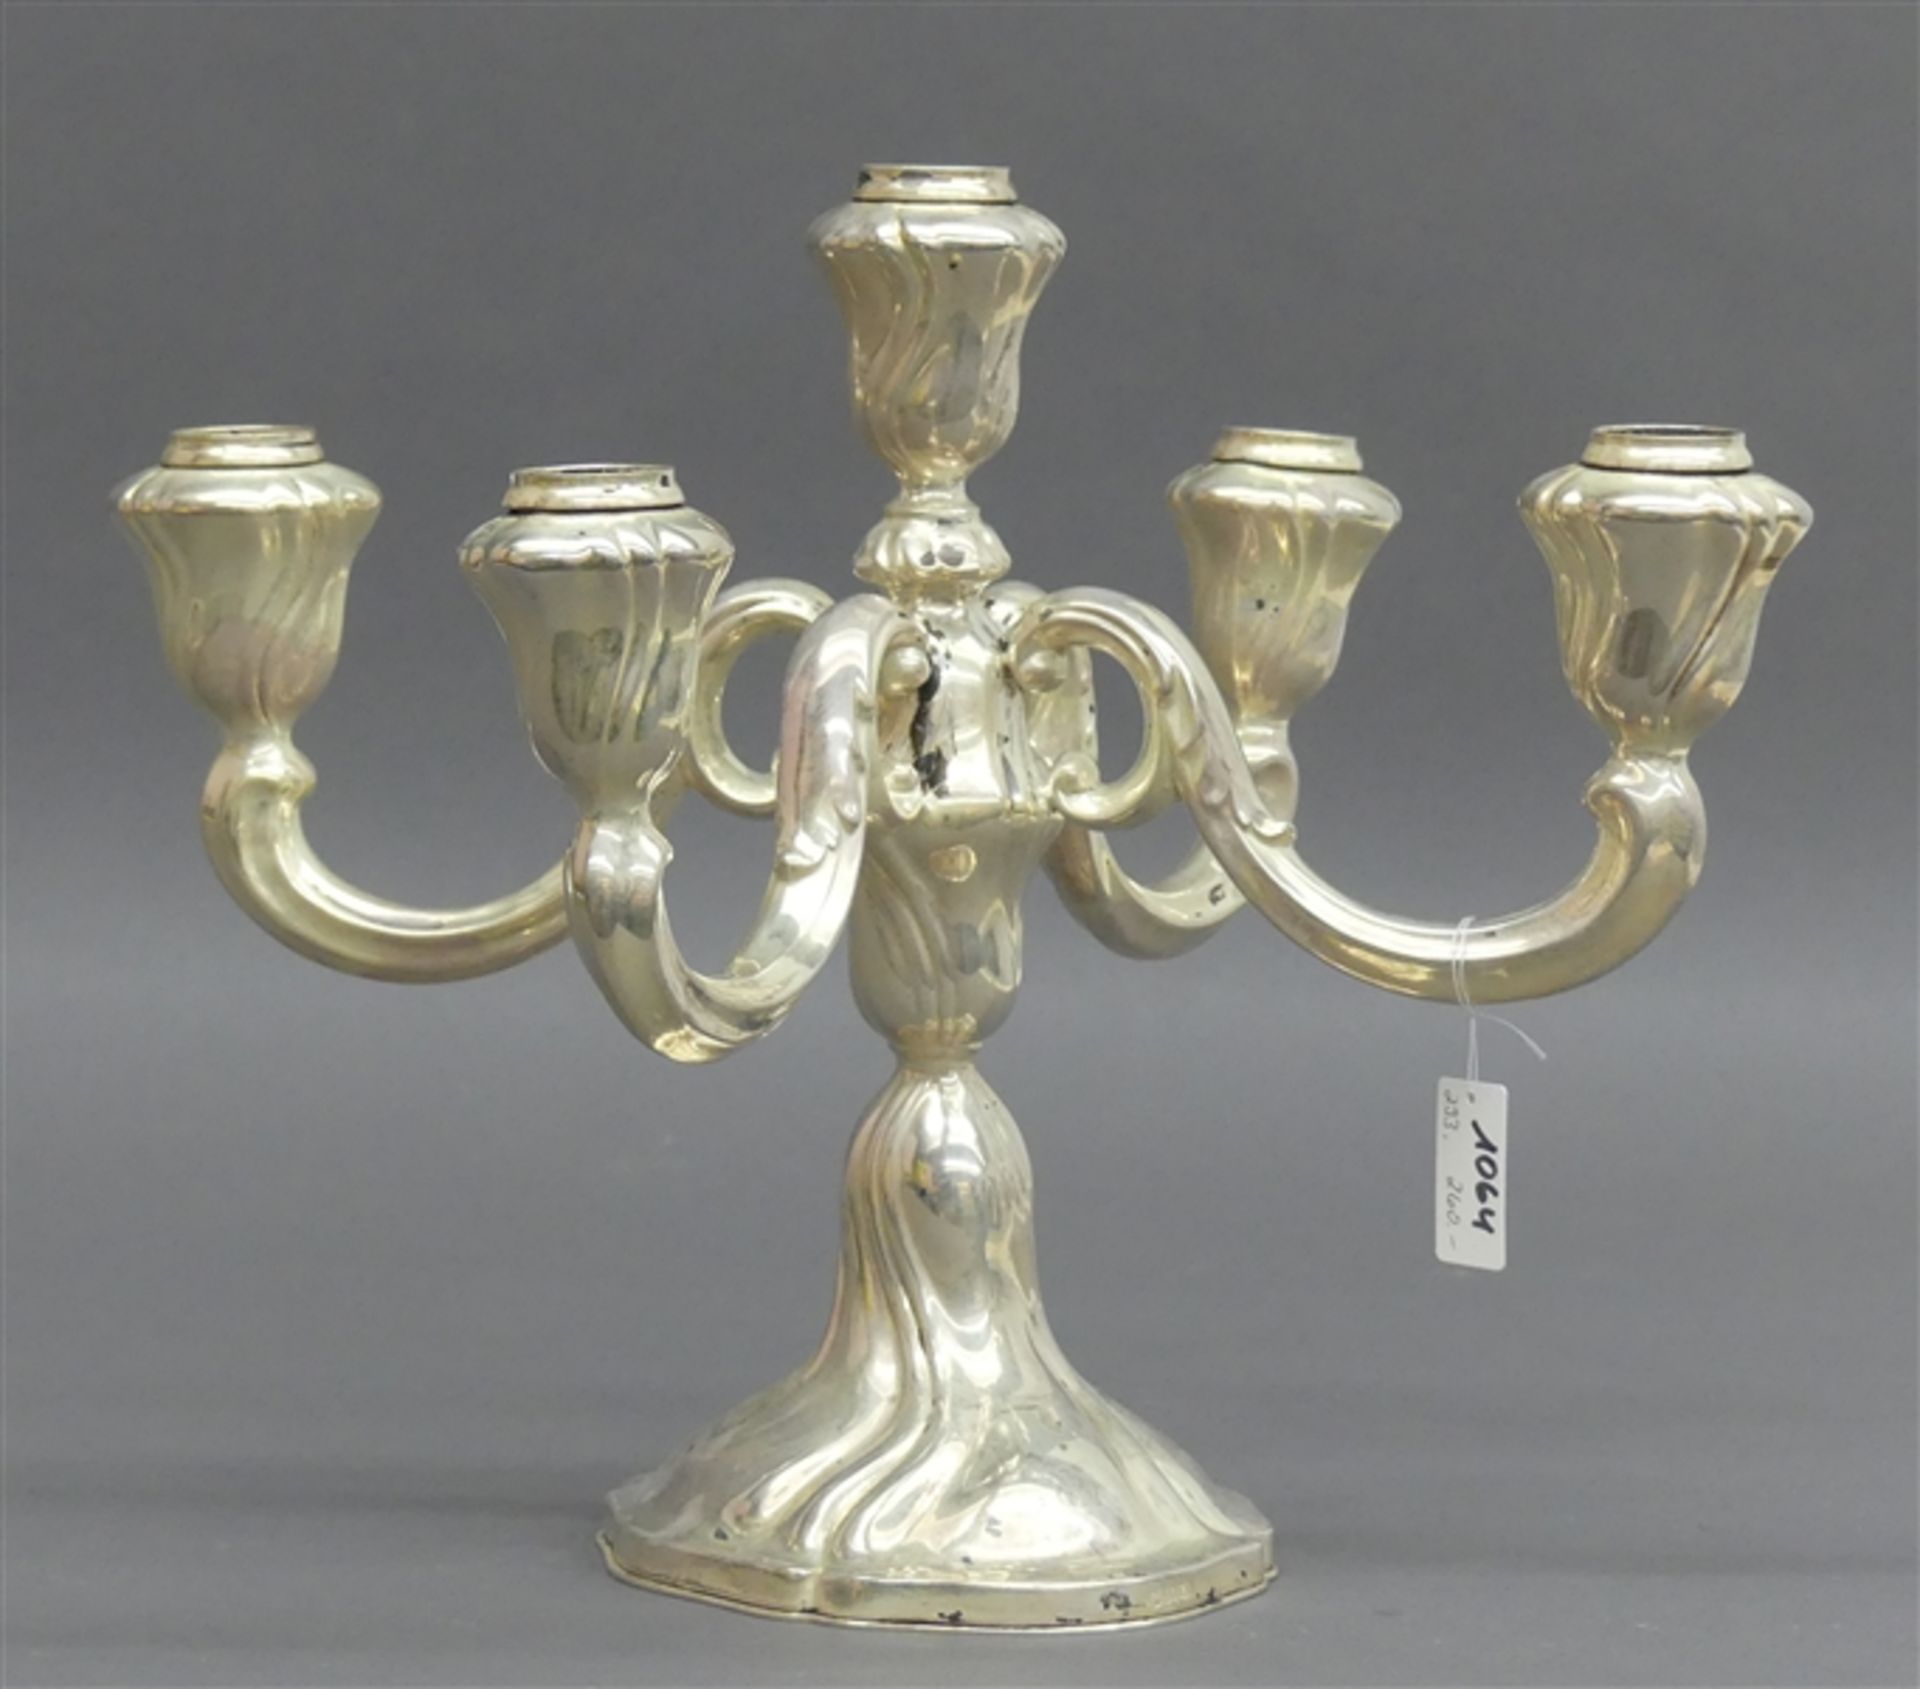 Kerzenleuchter 835 Silber, barocke Form Boden mit Metallplatte, 5-flammig, brutto 658 g schwer, h